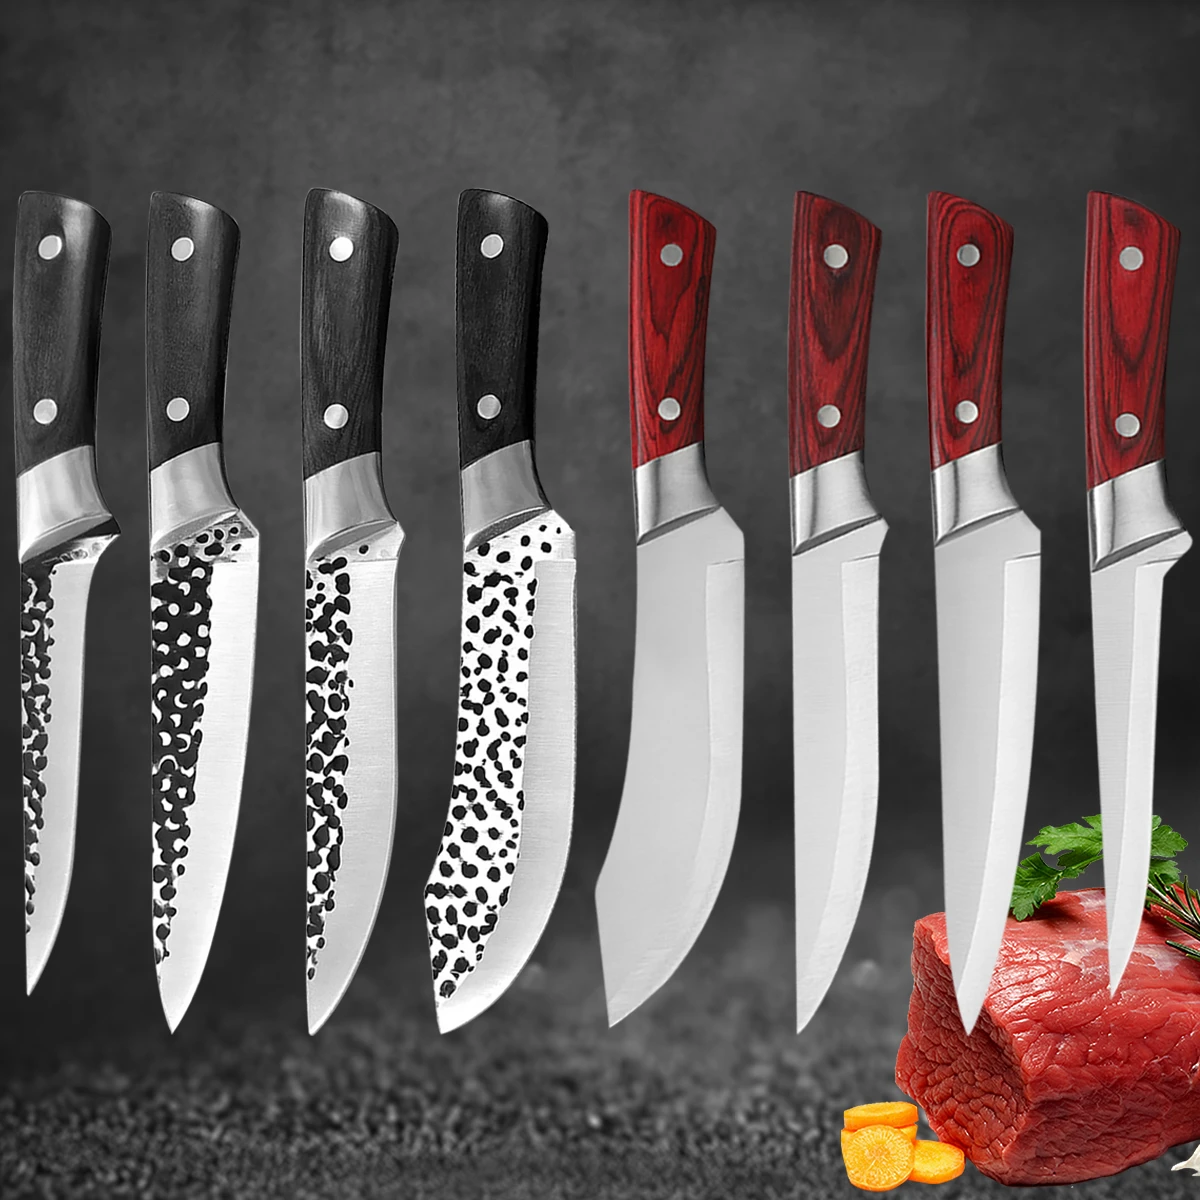 

Набор кухонных ножей шеф-повара, многофункциональный Кливер из нержавеющей стали для мяса, костей, рыбы, фруктов, овощей